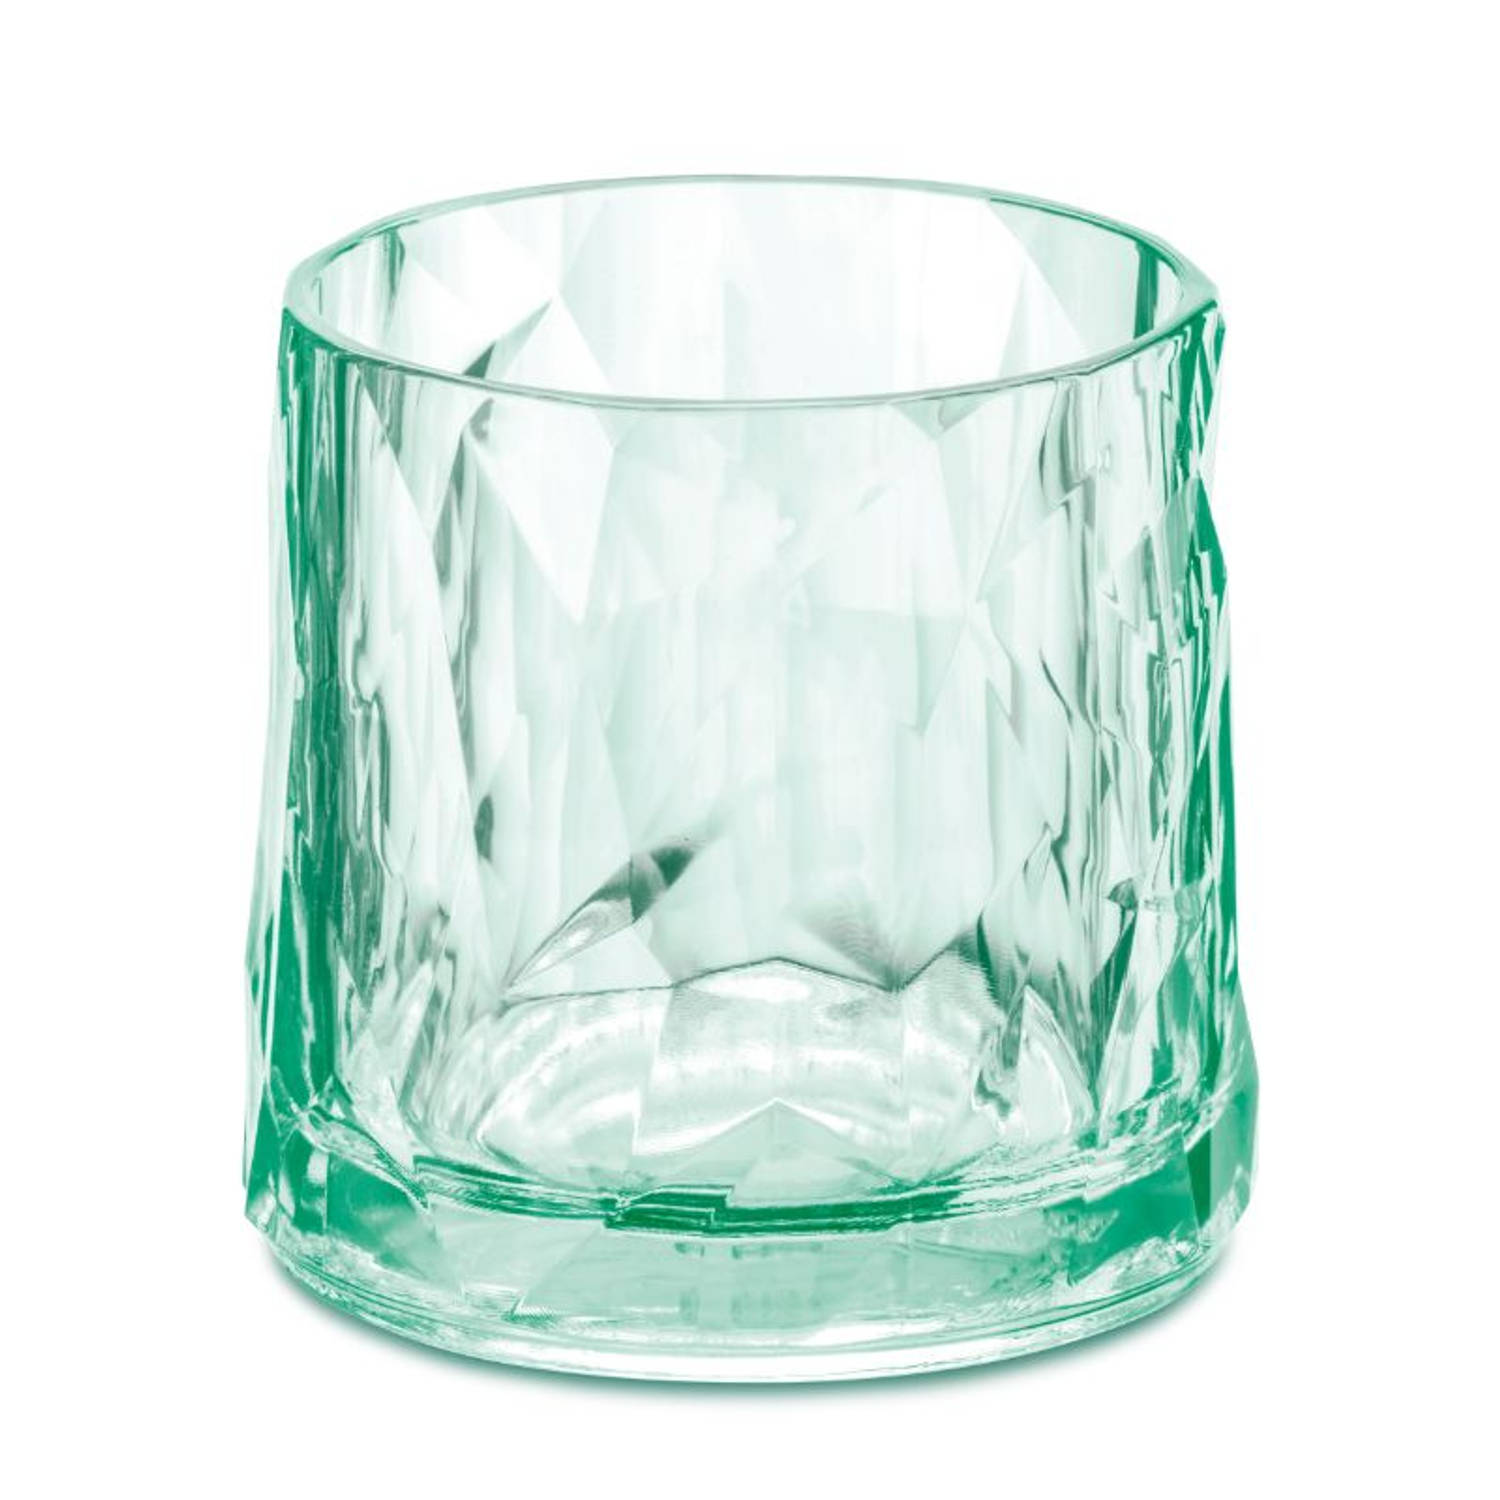 Whiskyglas, 250 ml Groen - Koziol No. 2 | Blokker